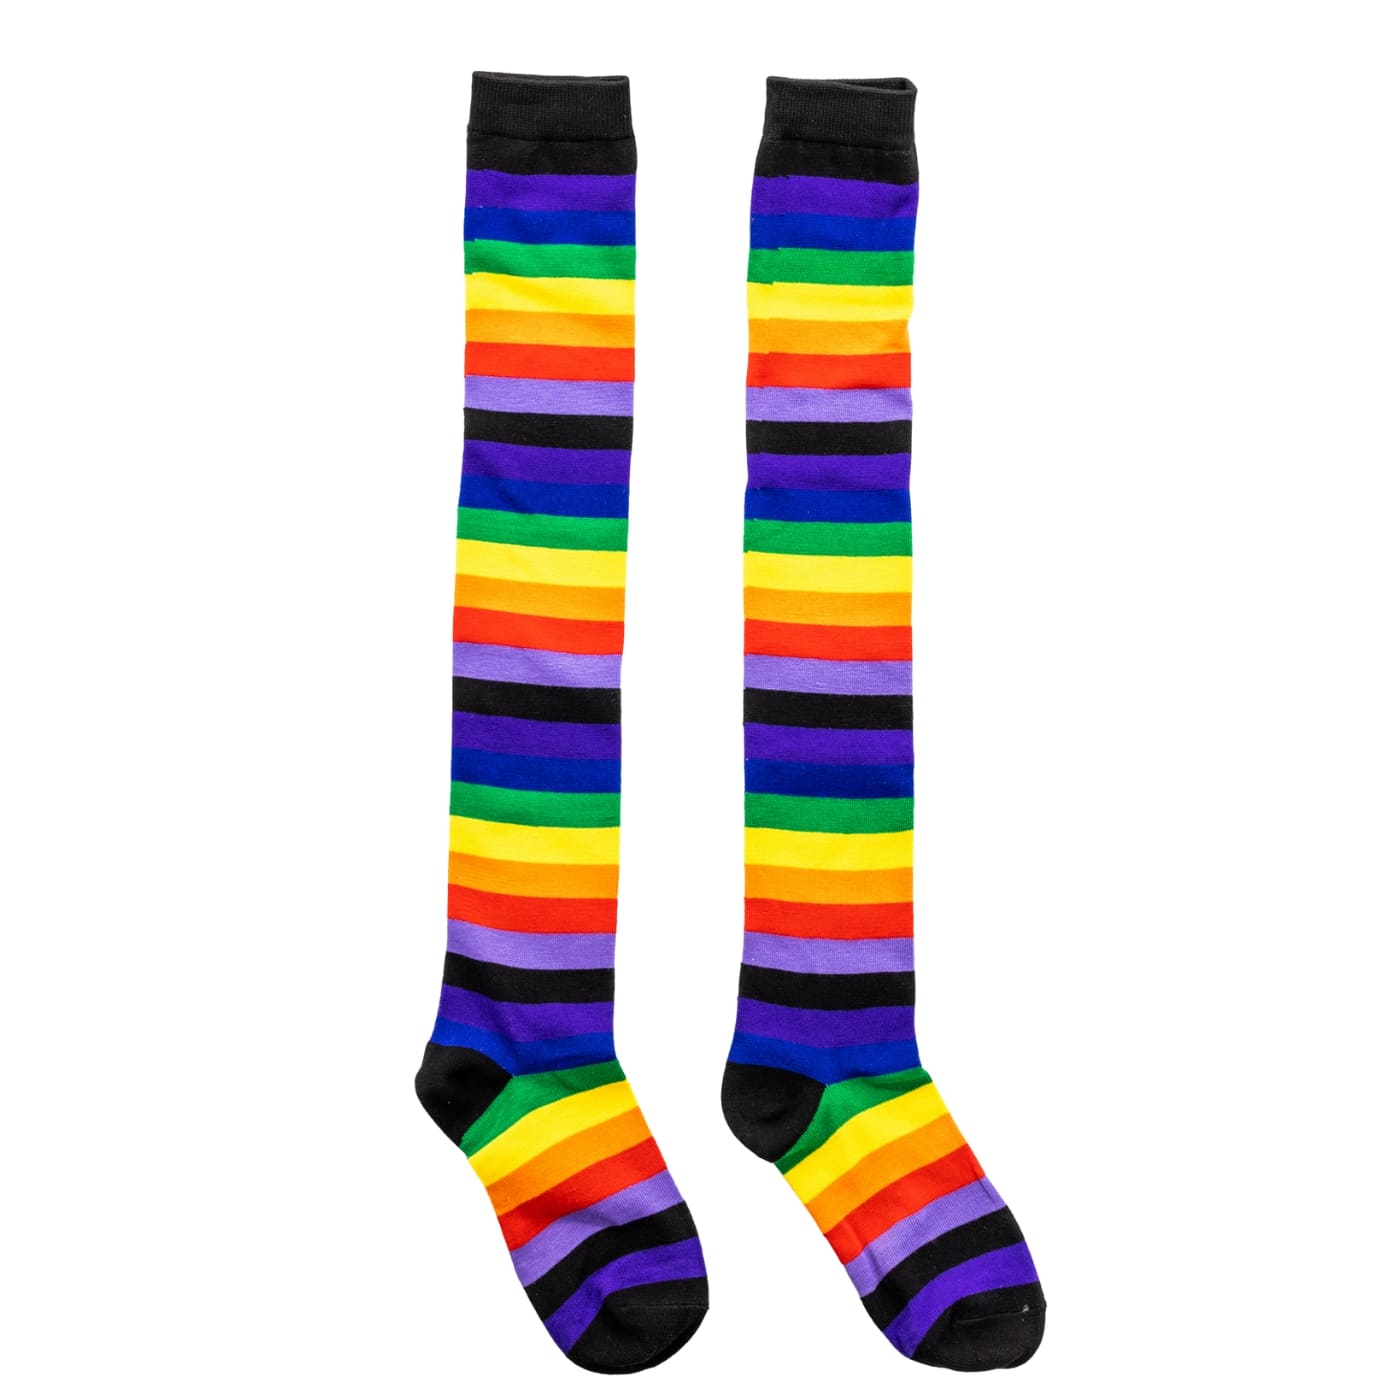 Black Rainbow Stripe Over The Knee Socks by RainbowsAndFairies.com.au (Stripe Long Socks - Rainbow - Stockings - Colourful Socks - Vintage Inspired) - SKU: FW_SOCKL_RAINB_BLA - Pic-02